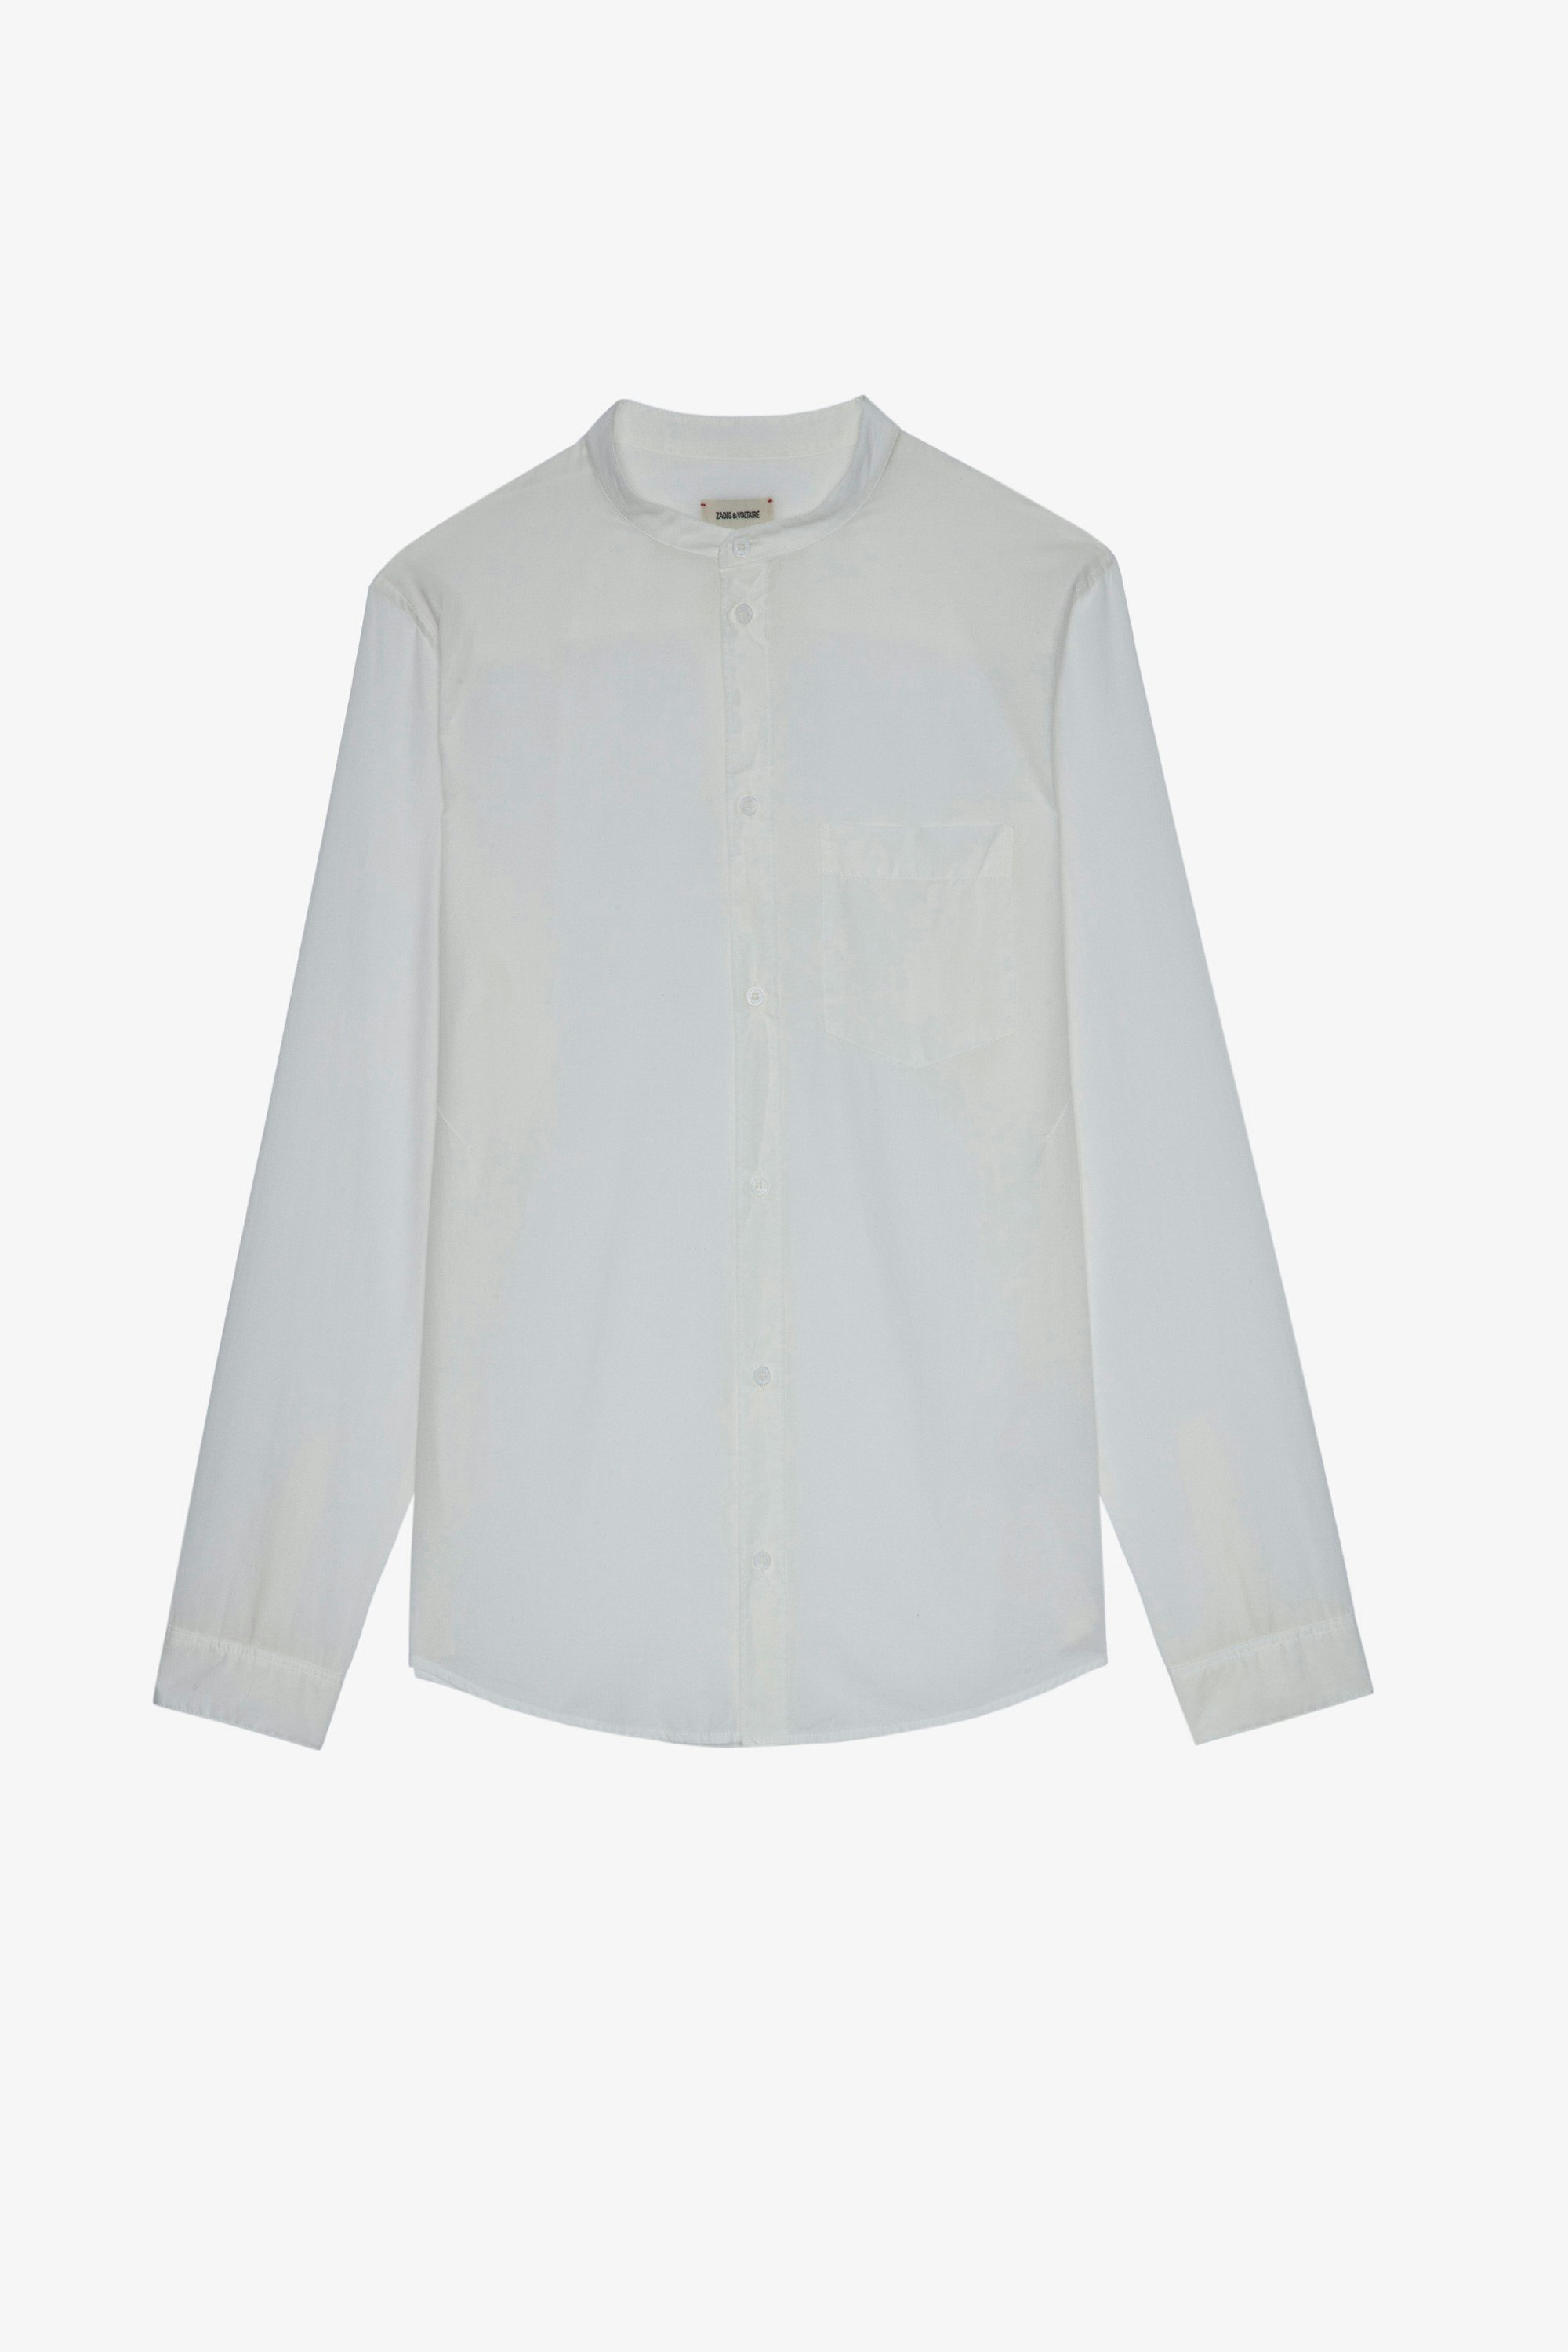 Camisa Thibaut Camisa blanca de algodón de hombre